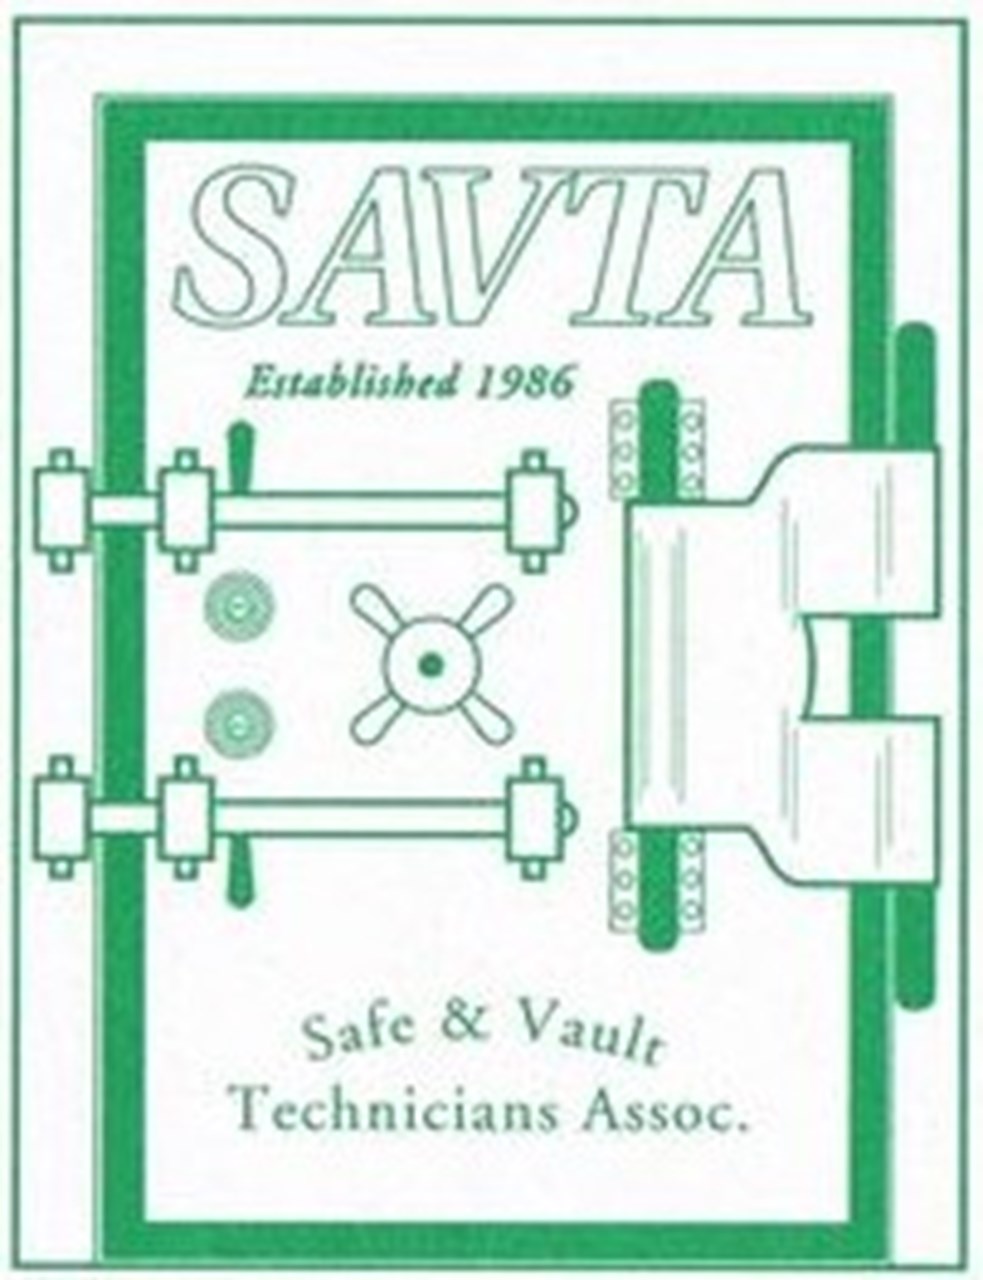 Wertschutzschrank & Vault Technicians Association SAVTA